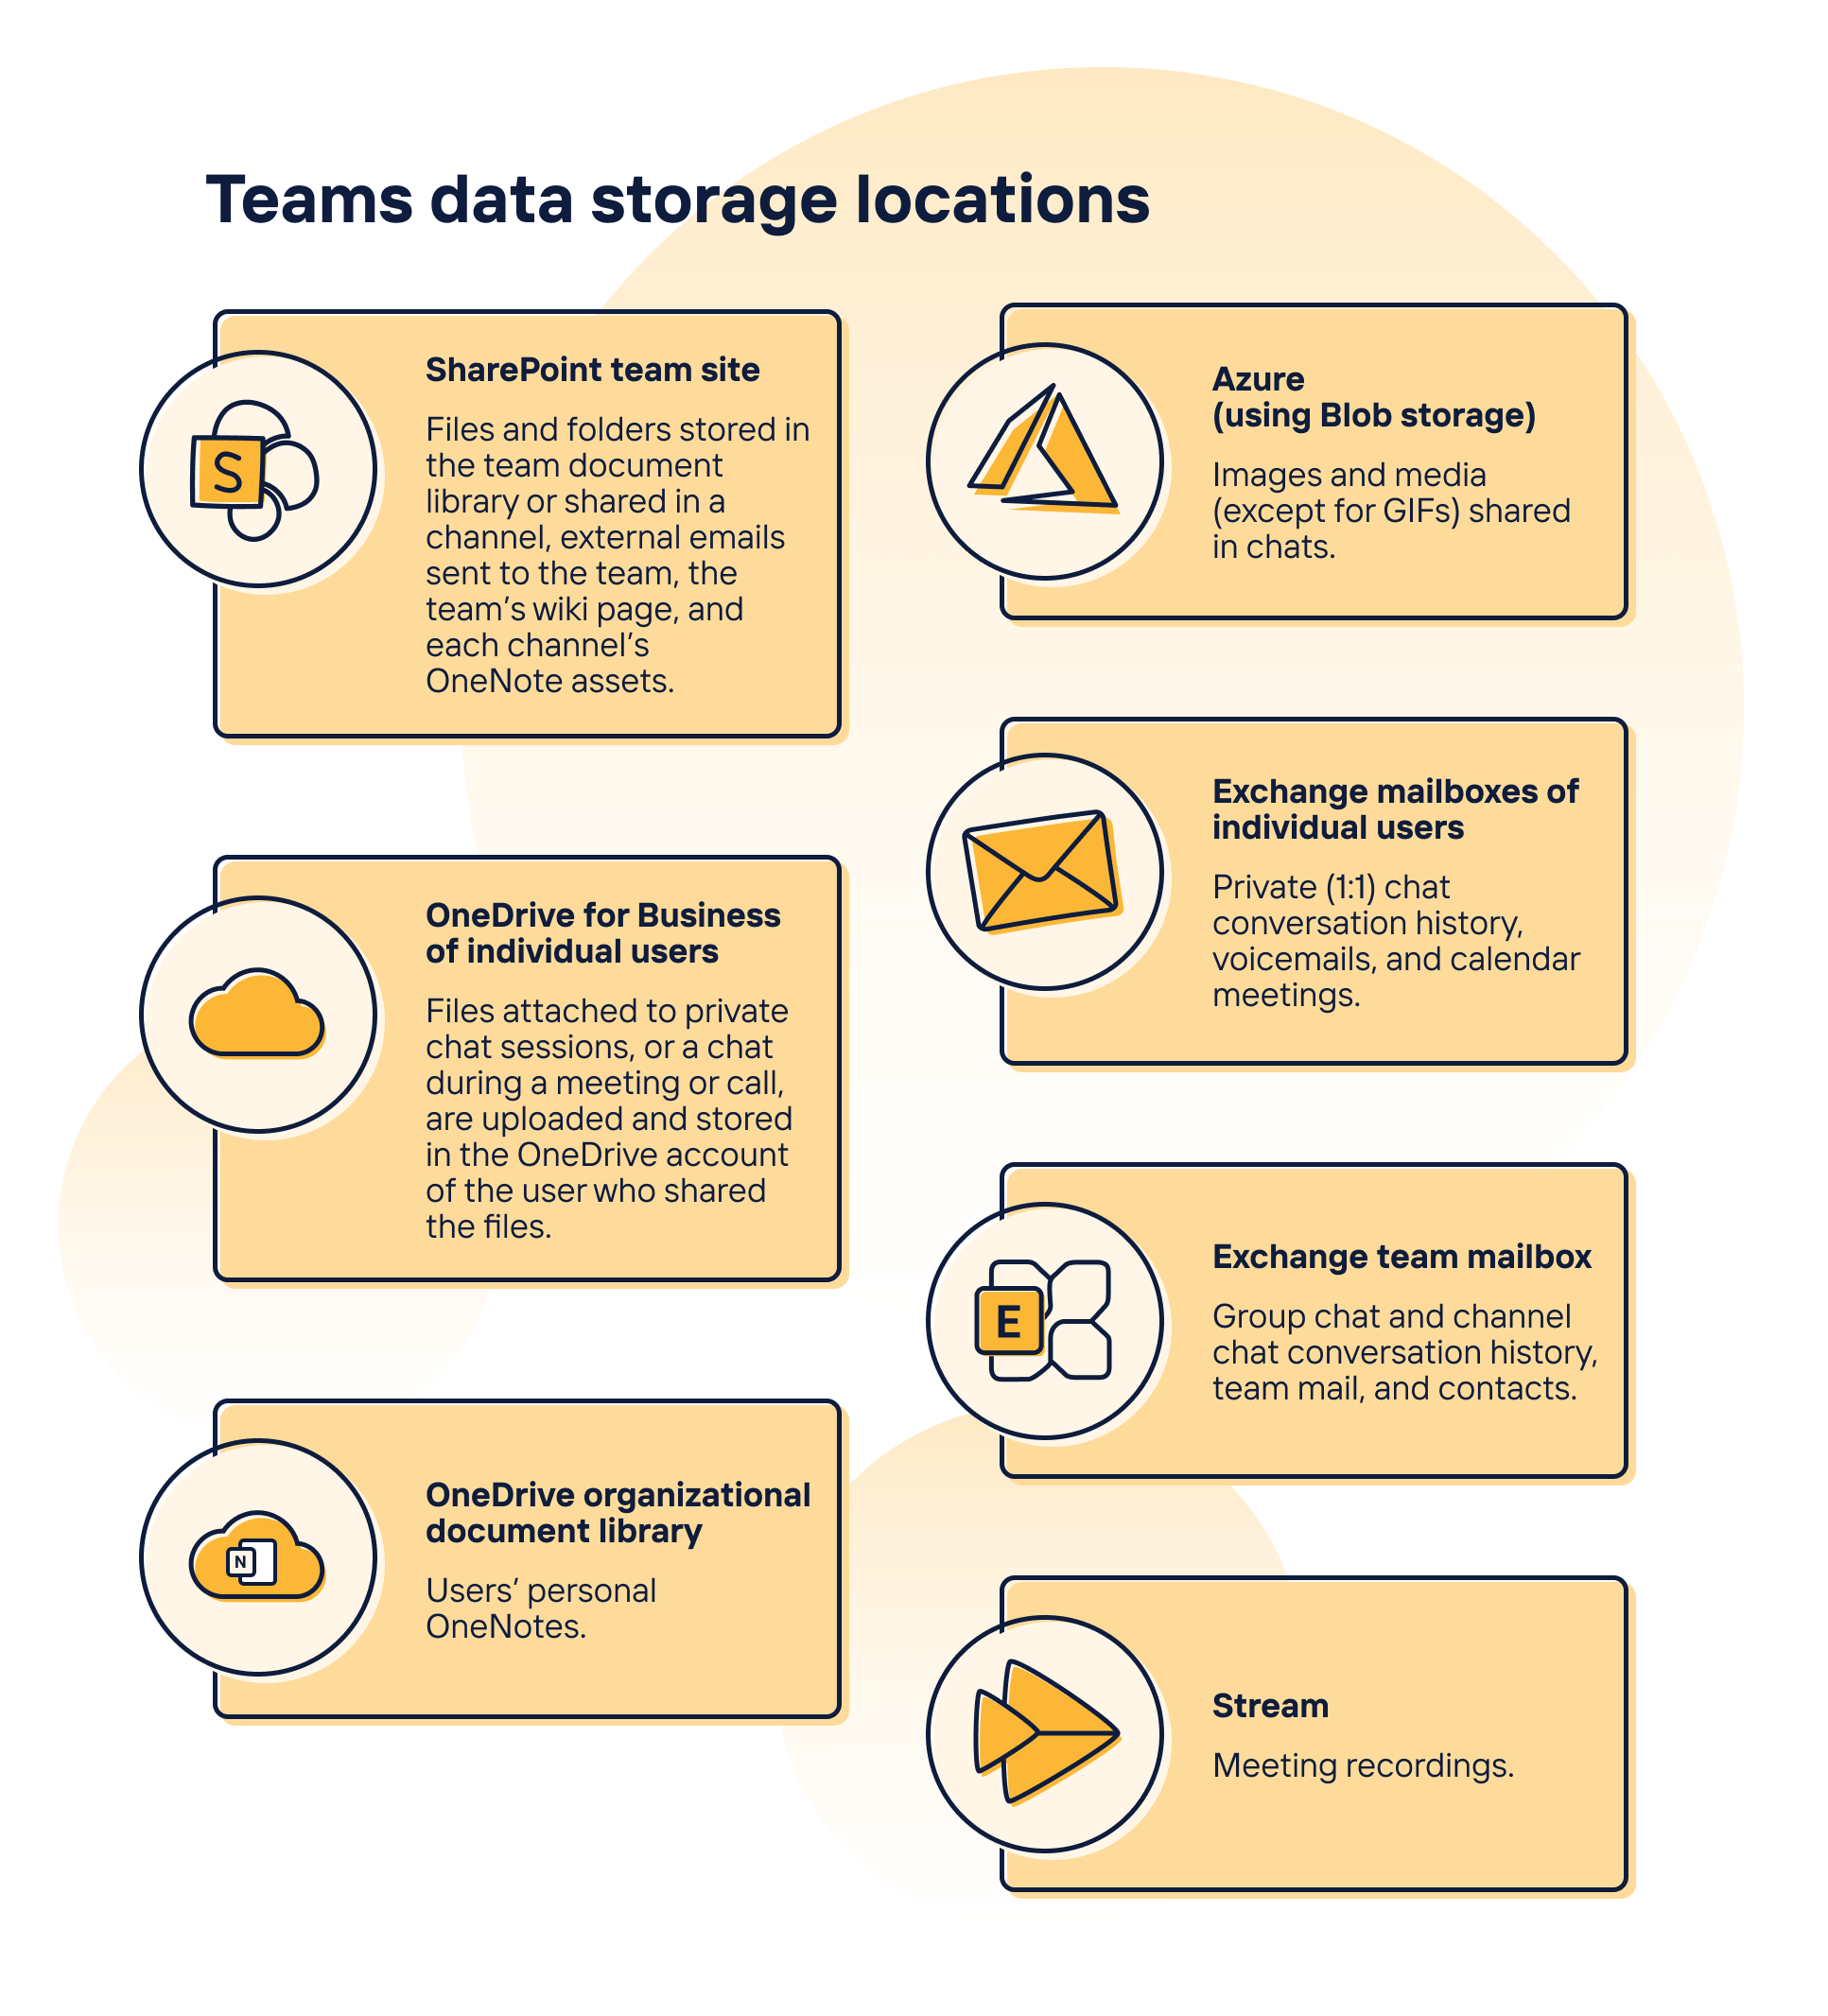 Teams data storage locations